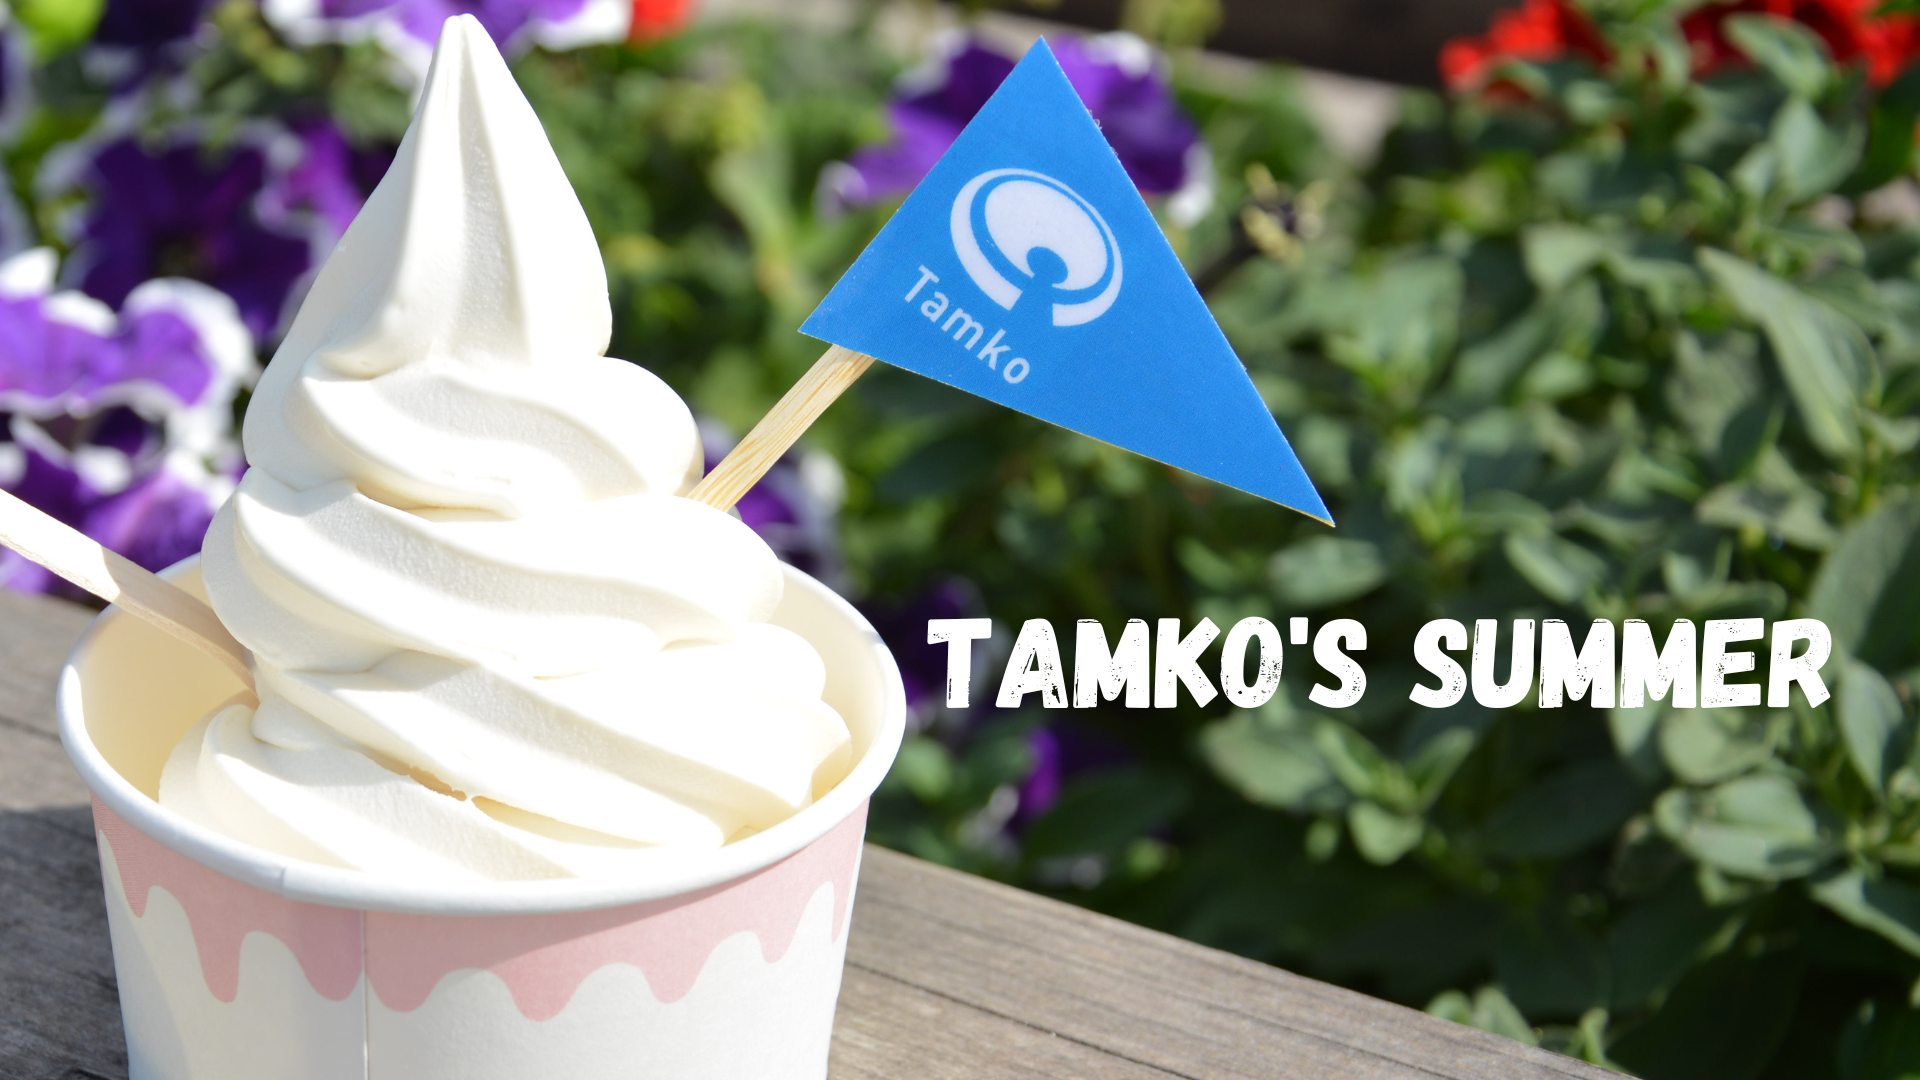 Tamko’s summer